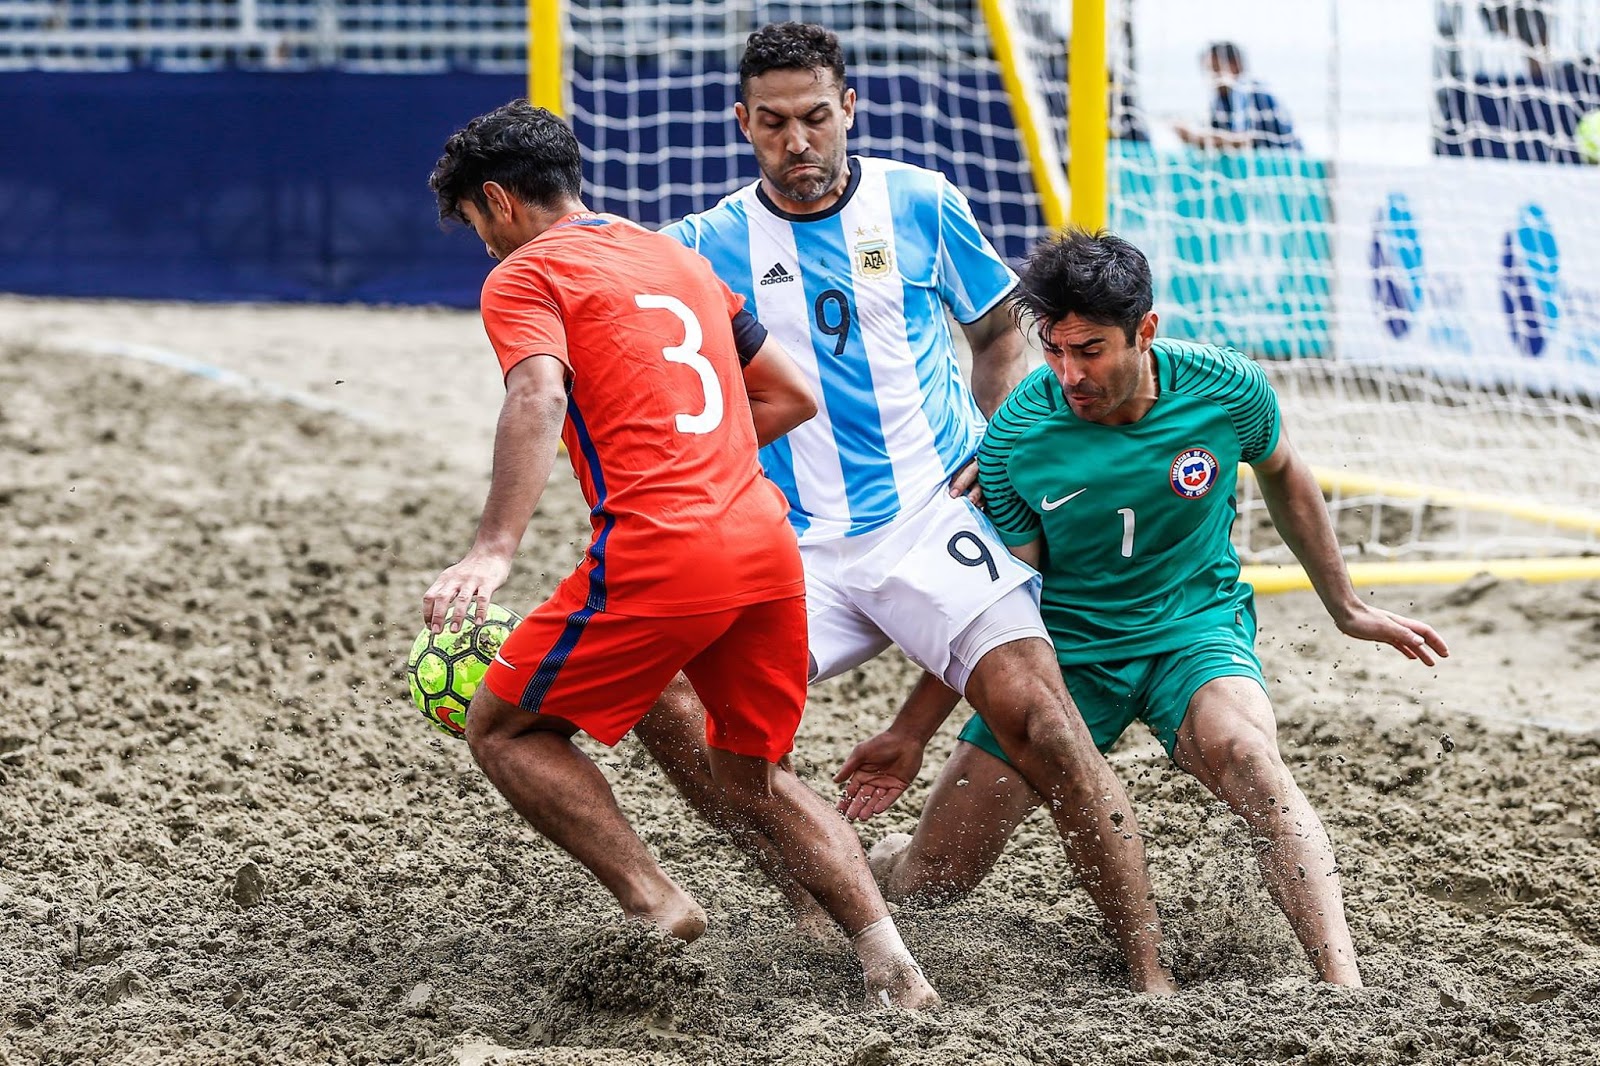 Fútbol Playa: La Selección Argentina venció a Uruguay - POLIDEPORTIVO NEWS